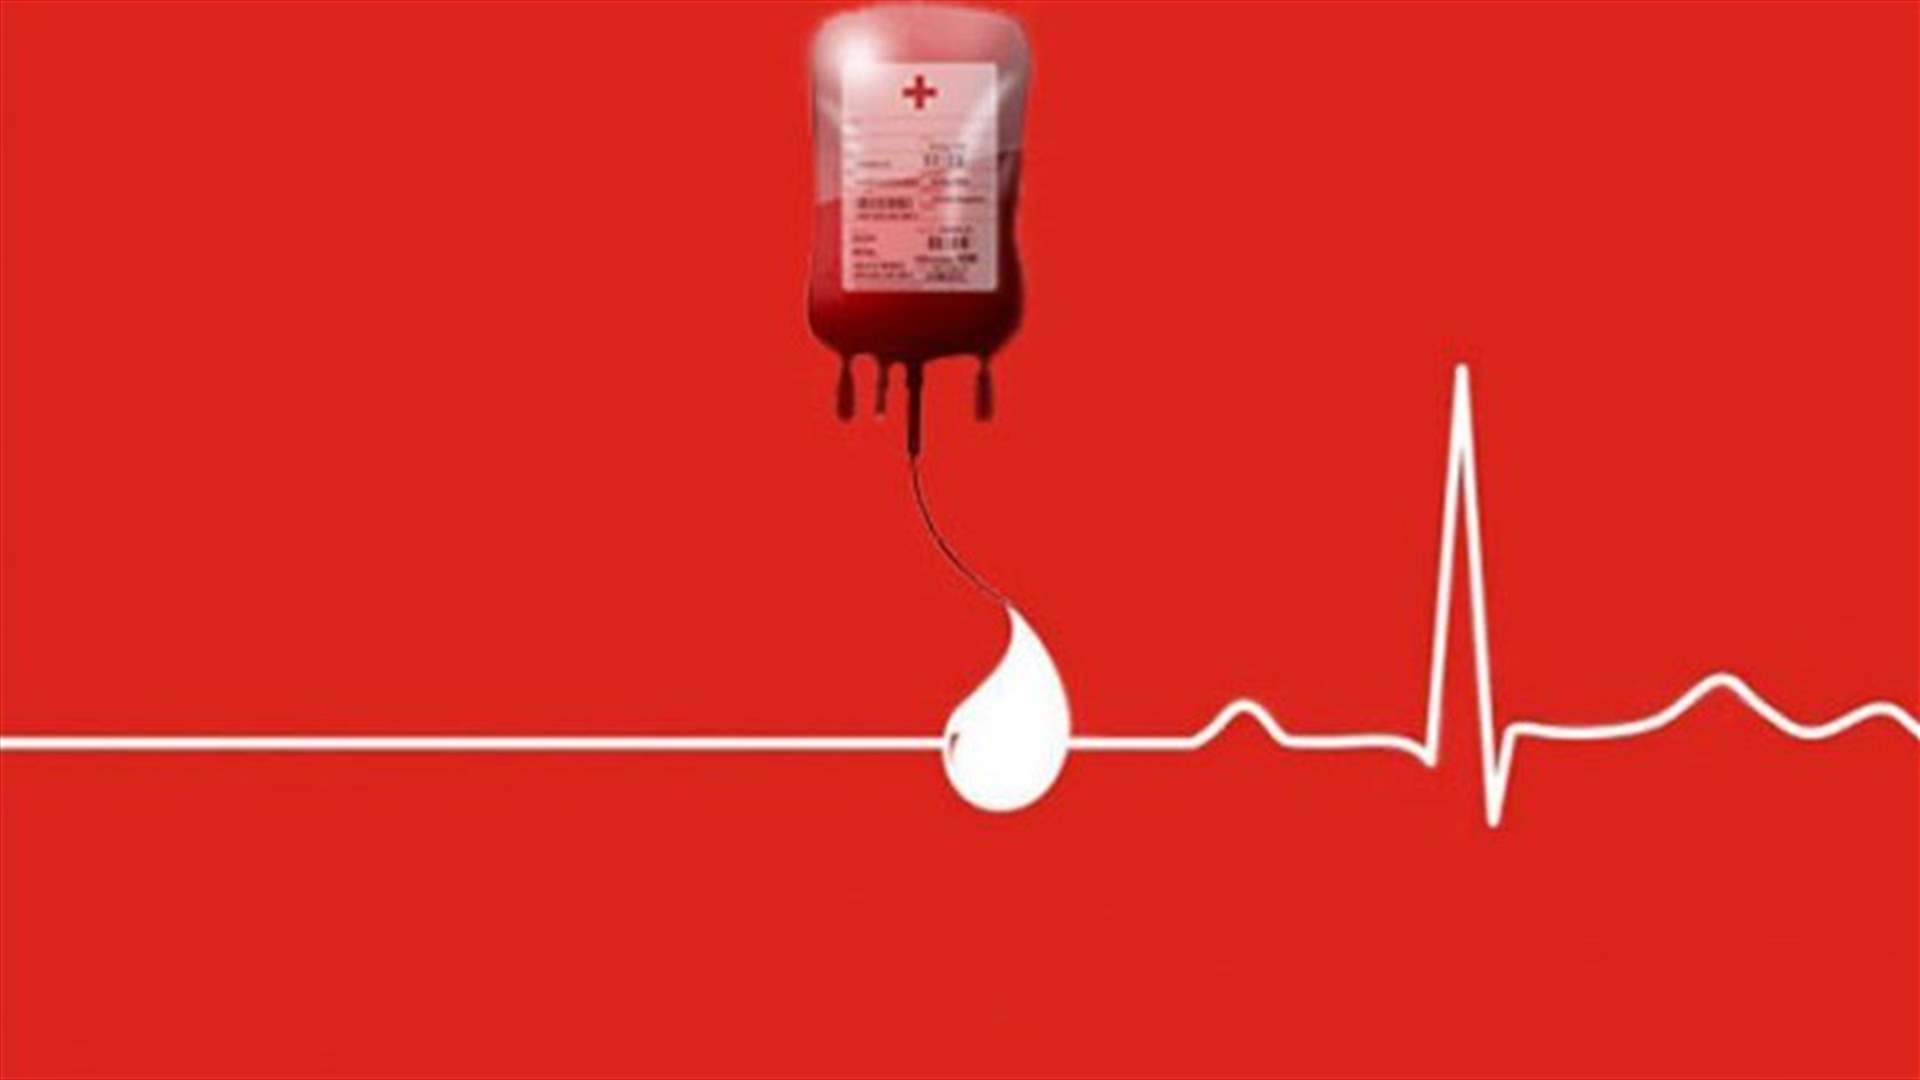 مريض في مستشفى البترون بحاجة ماسة إلى 4 وحدات دم من فئة A+... للتبرع: 03-452855